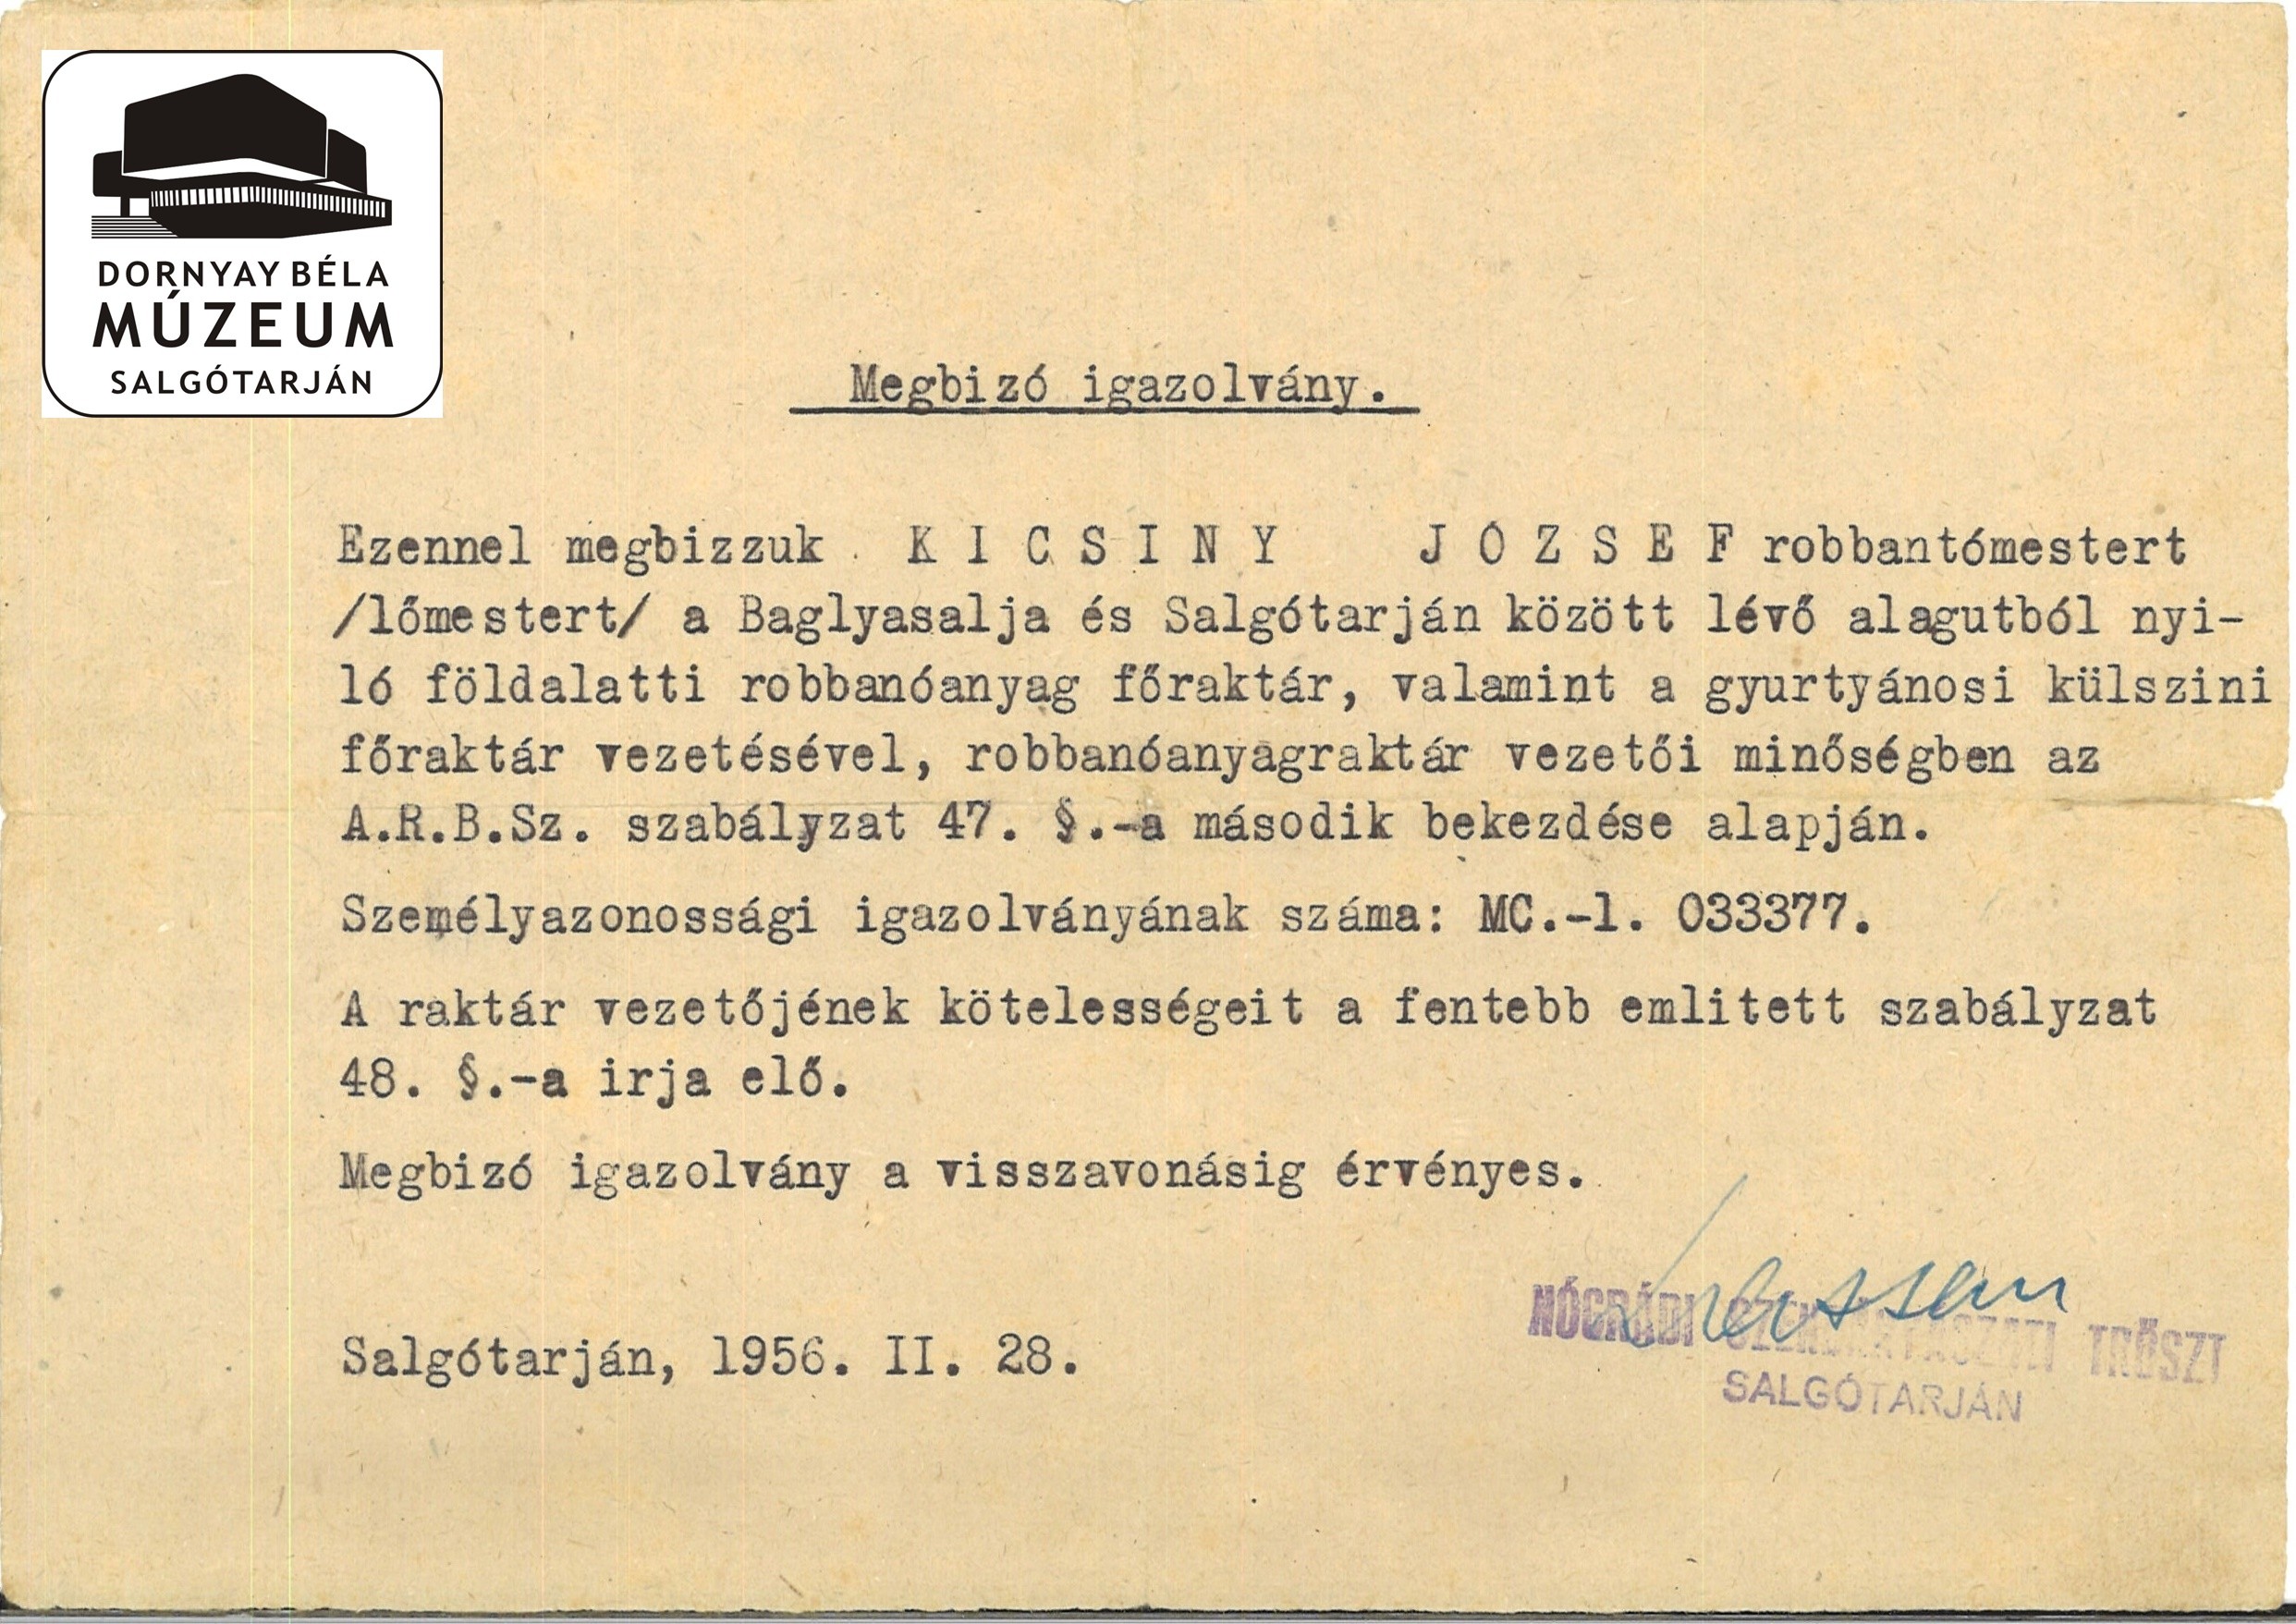 Nógrádi Szénbányászati Tröszt - megbízó igazolvány Kicsiny József (Dornyay Béla Múzeum, Salgótarján CC BY-NC-SA)